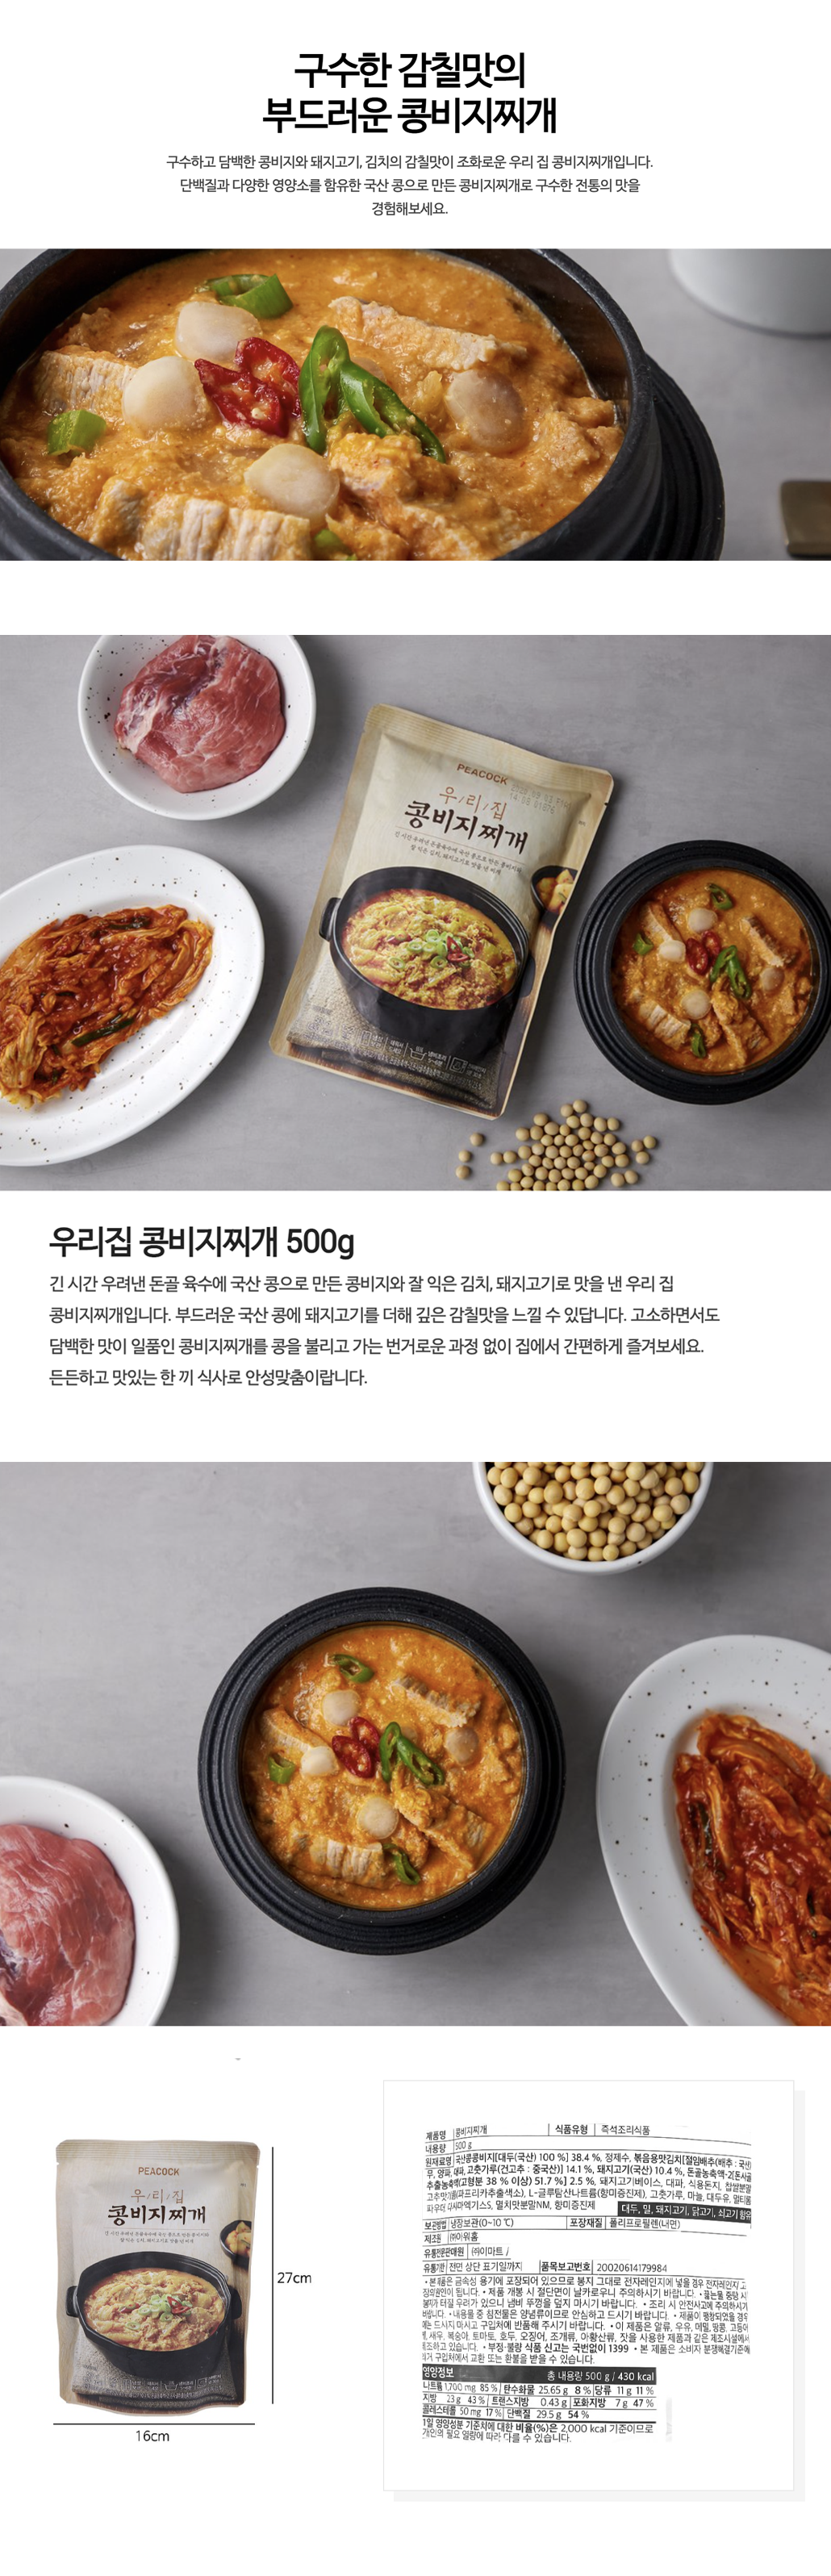 韓國食品-[피코크 Peacock] 우리집 콩비지찌개 500g